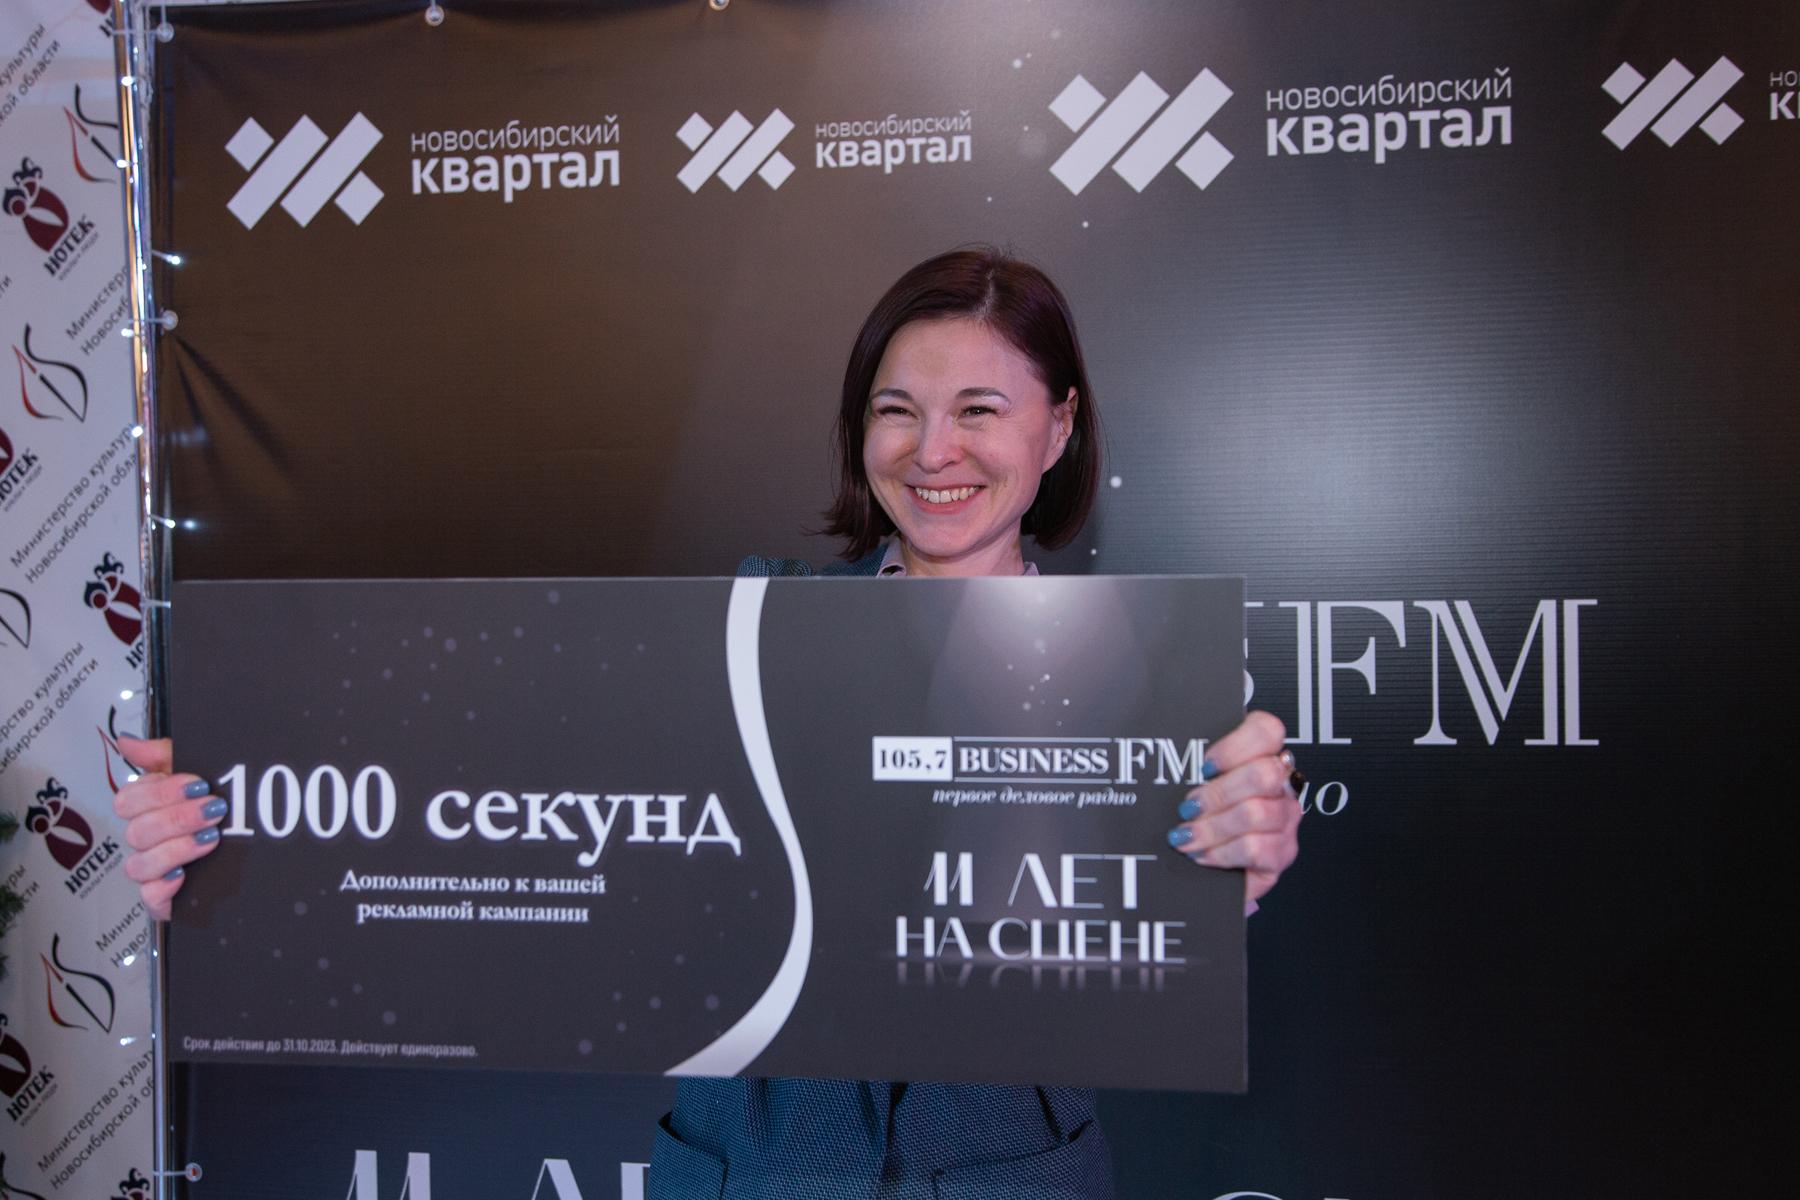 Фото Радиостанция Business FM в Новосибирске отметила 11 лет в эфире 67